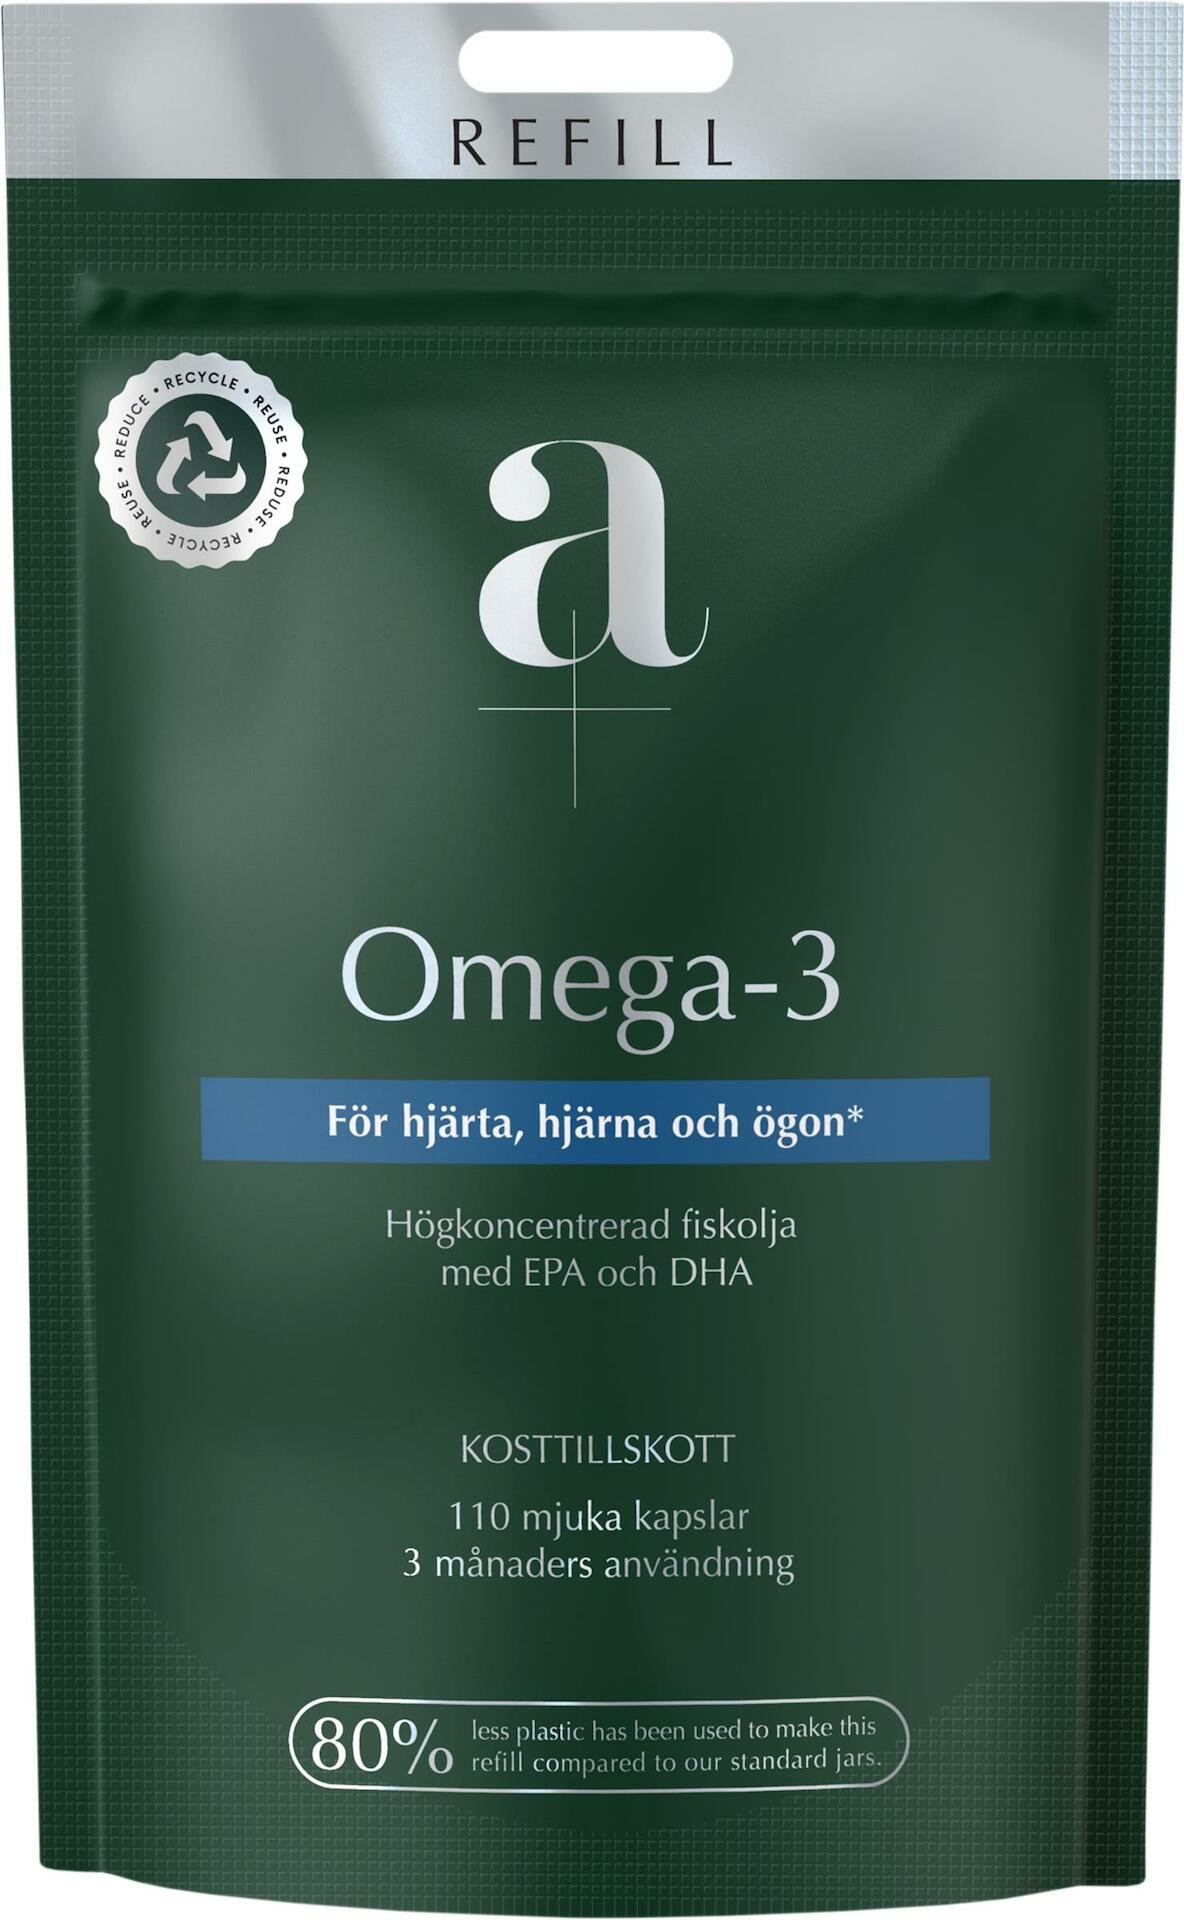 A+ Omega-3 Refill 110 mjuka kapslar